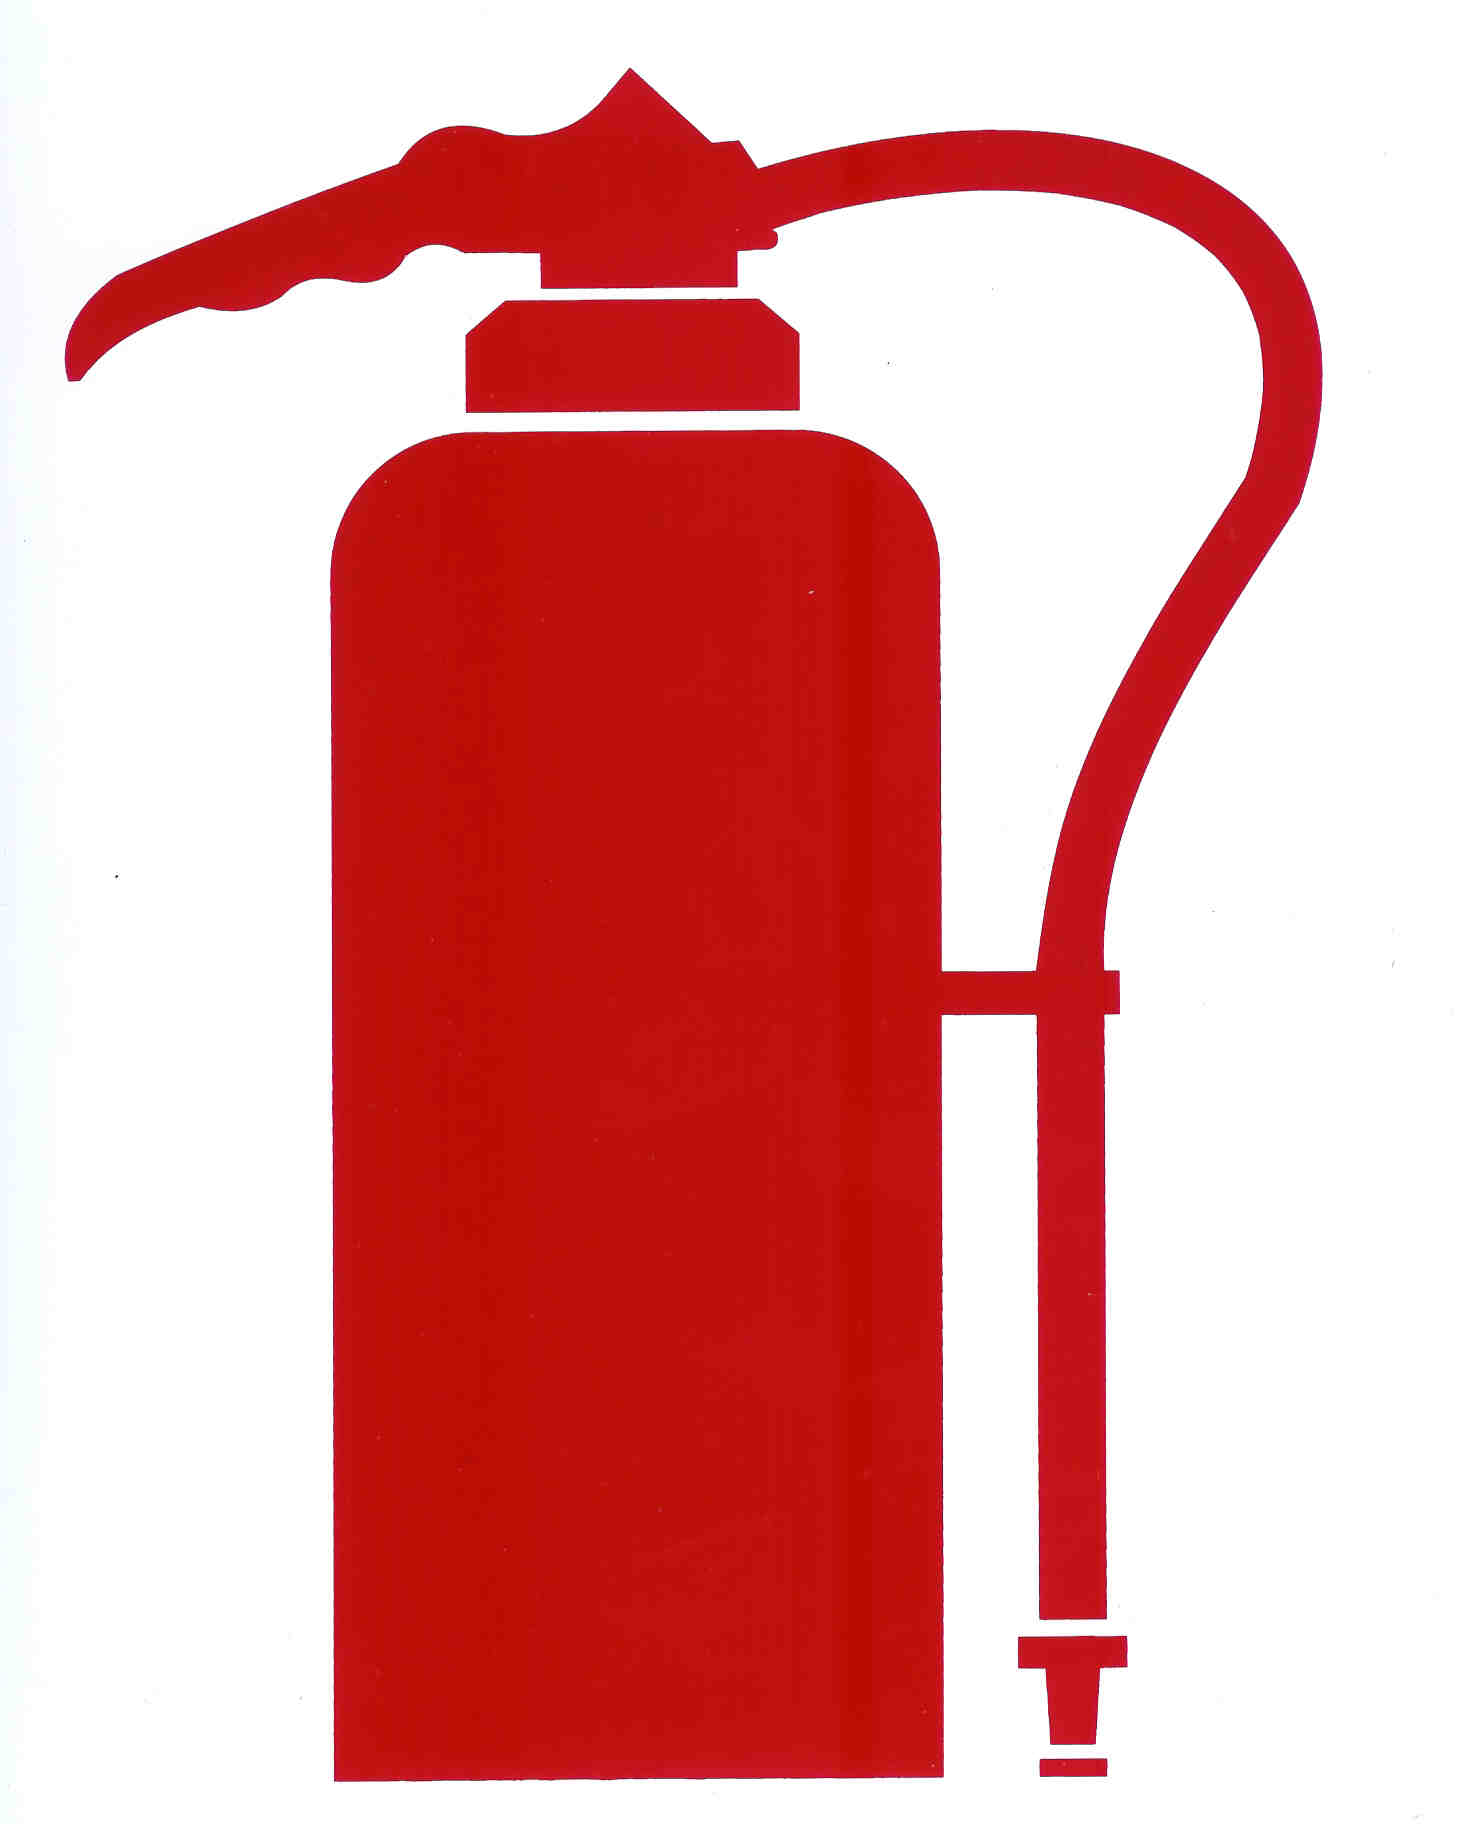 Fire Extinguisher Images . Fire Extinguisher Images . Fire Extinguisher Clipart